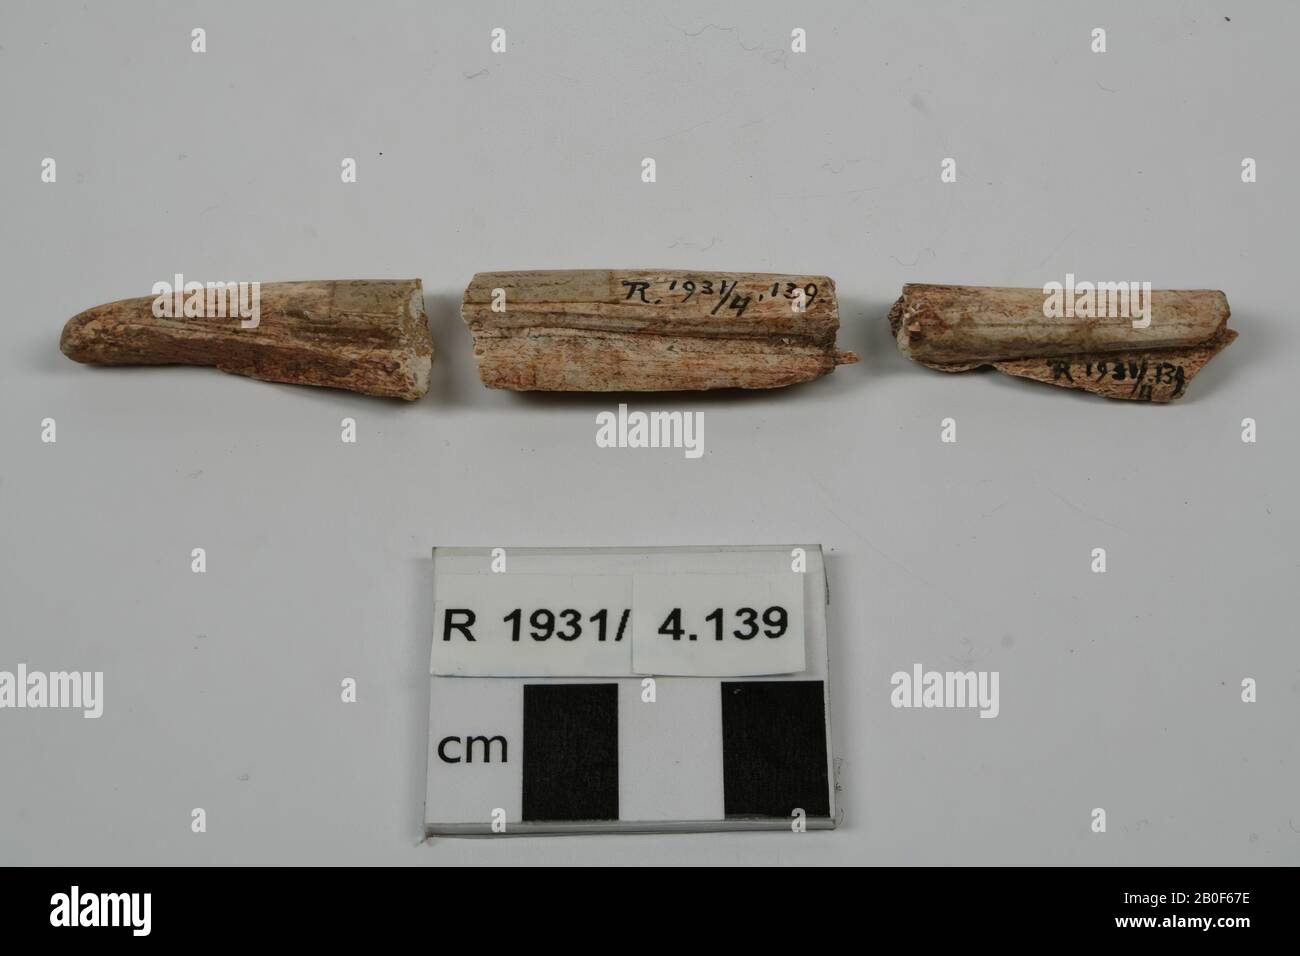 3 fragmentos de hueso procesado, pierna tratada, fragmento, orgánico, hueso, 4,4 x 1,7 cm, Francia, desconocido, desconocido, desconocido Foto de stock